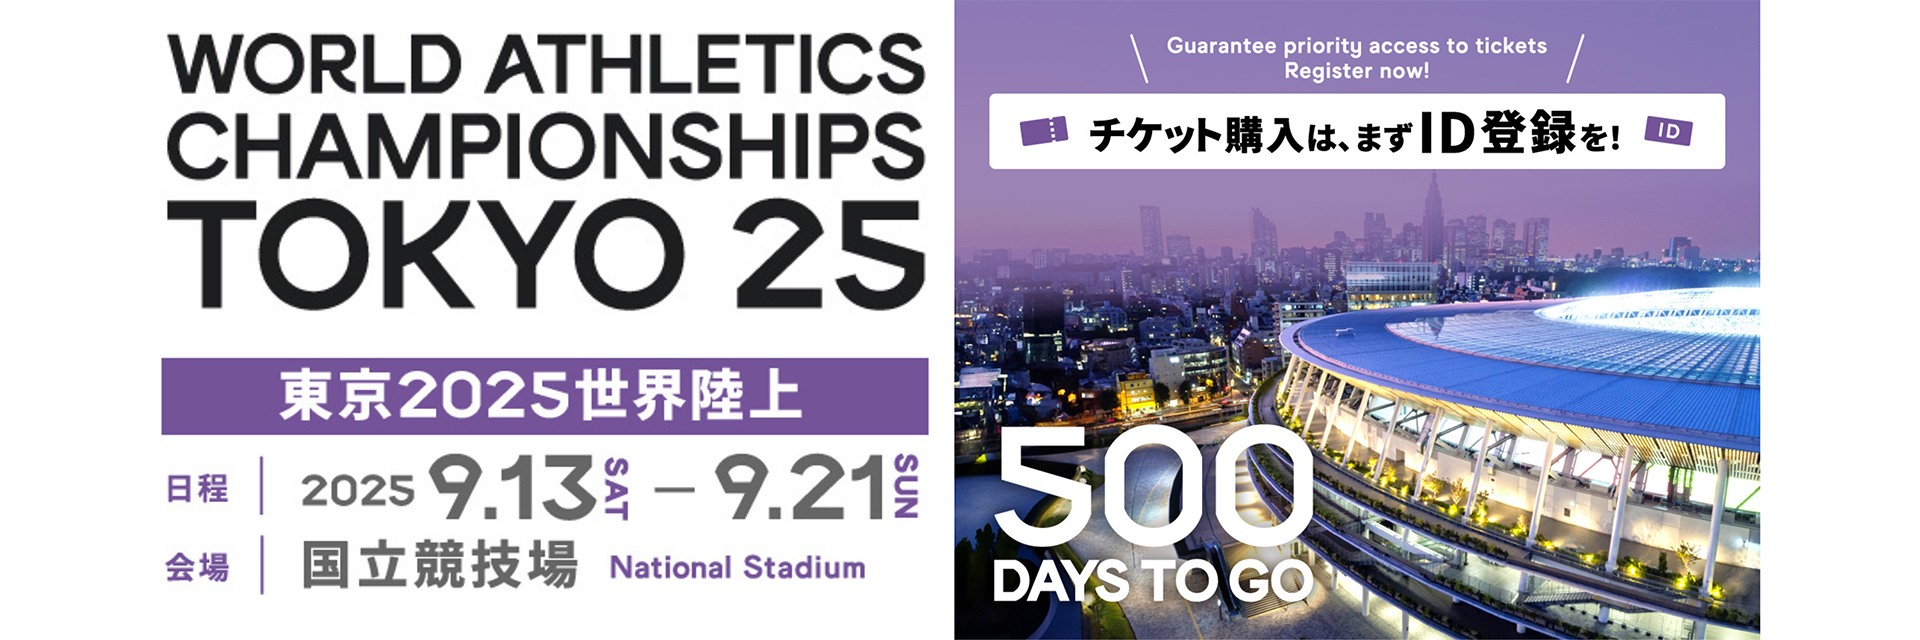 【东京2025世界田径基金会】还有500天！距离活动还有500天！